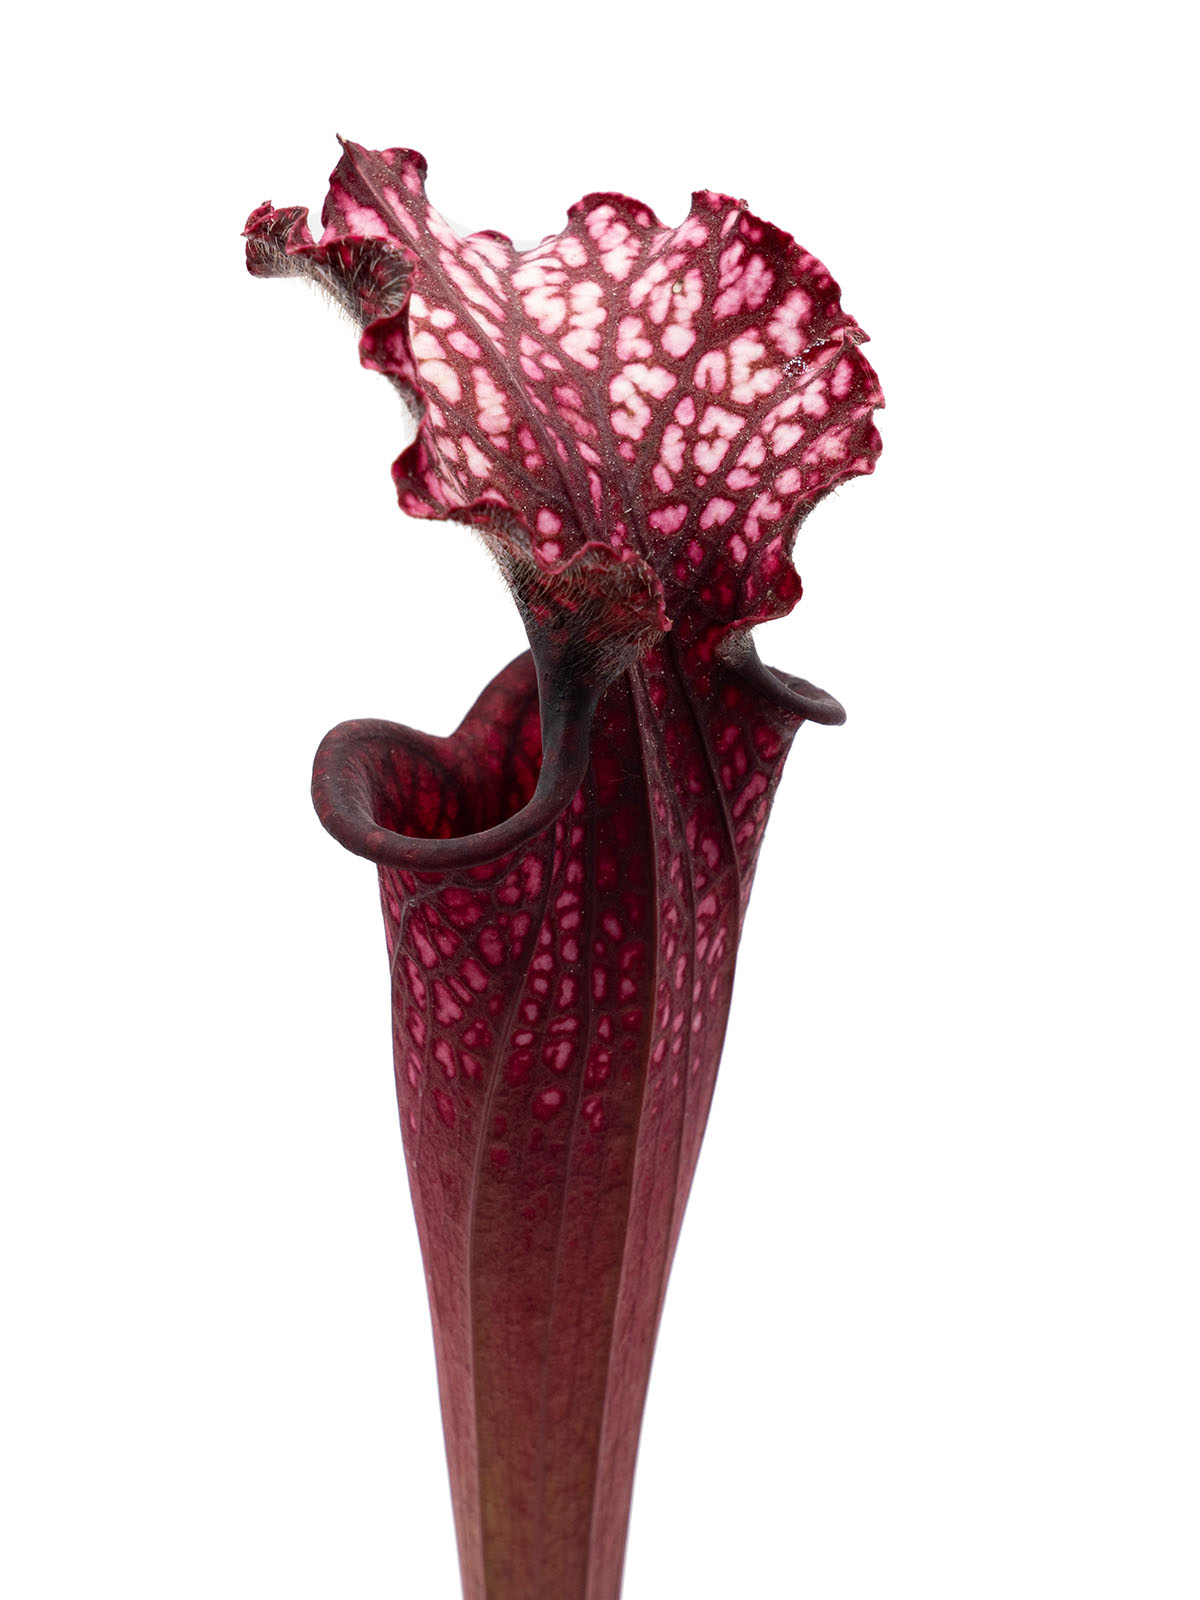 Sarracenia leucophylla - red form, Yuri Sarzi, L3C